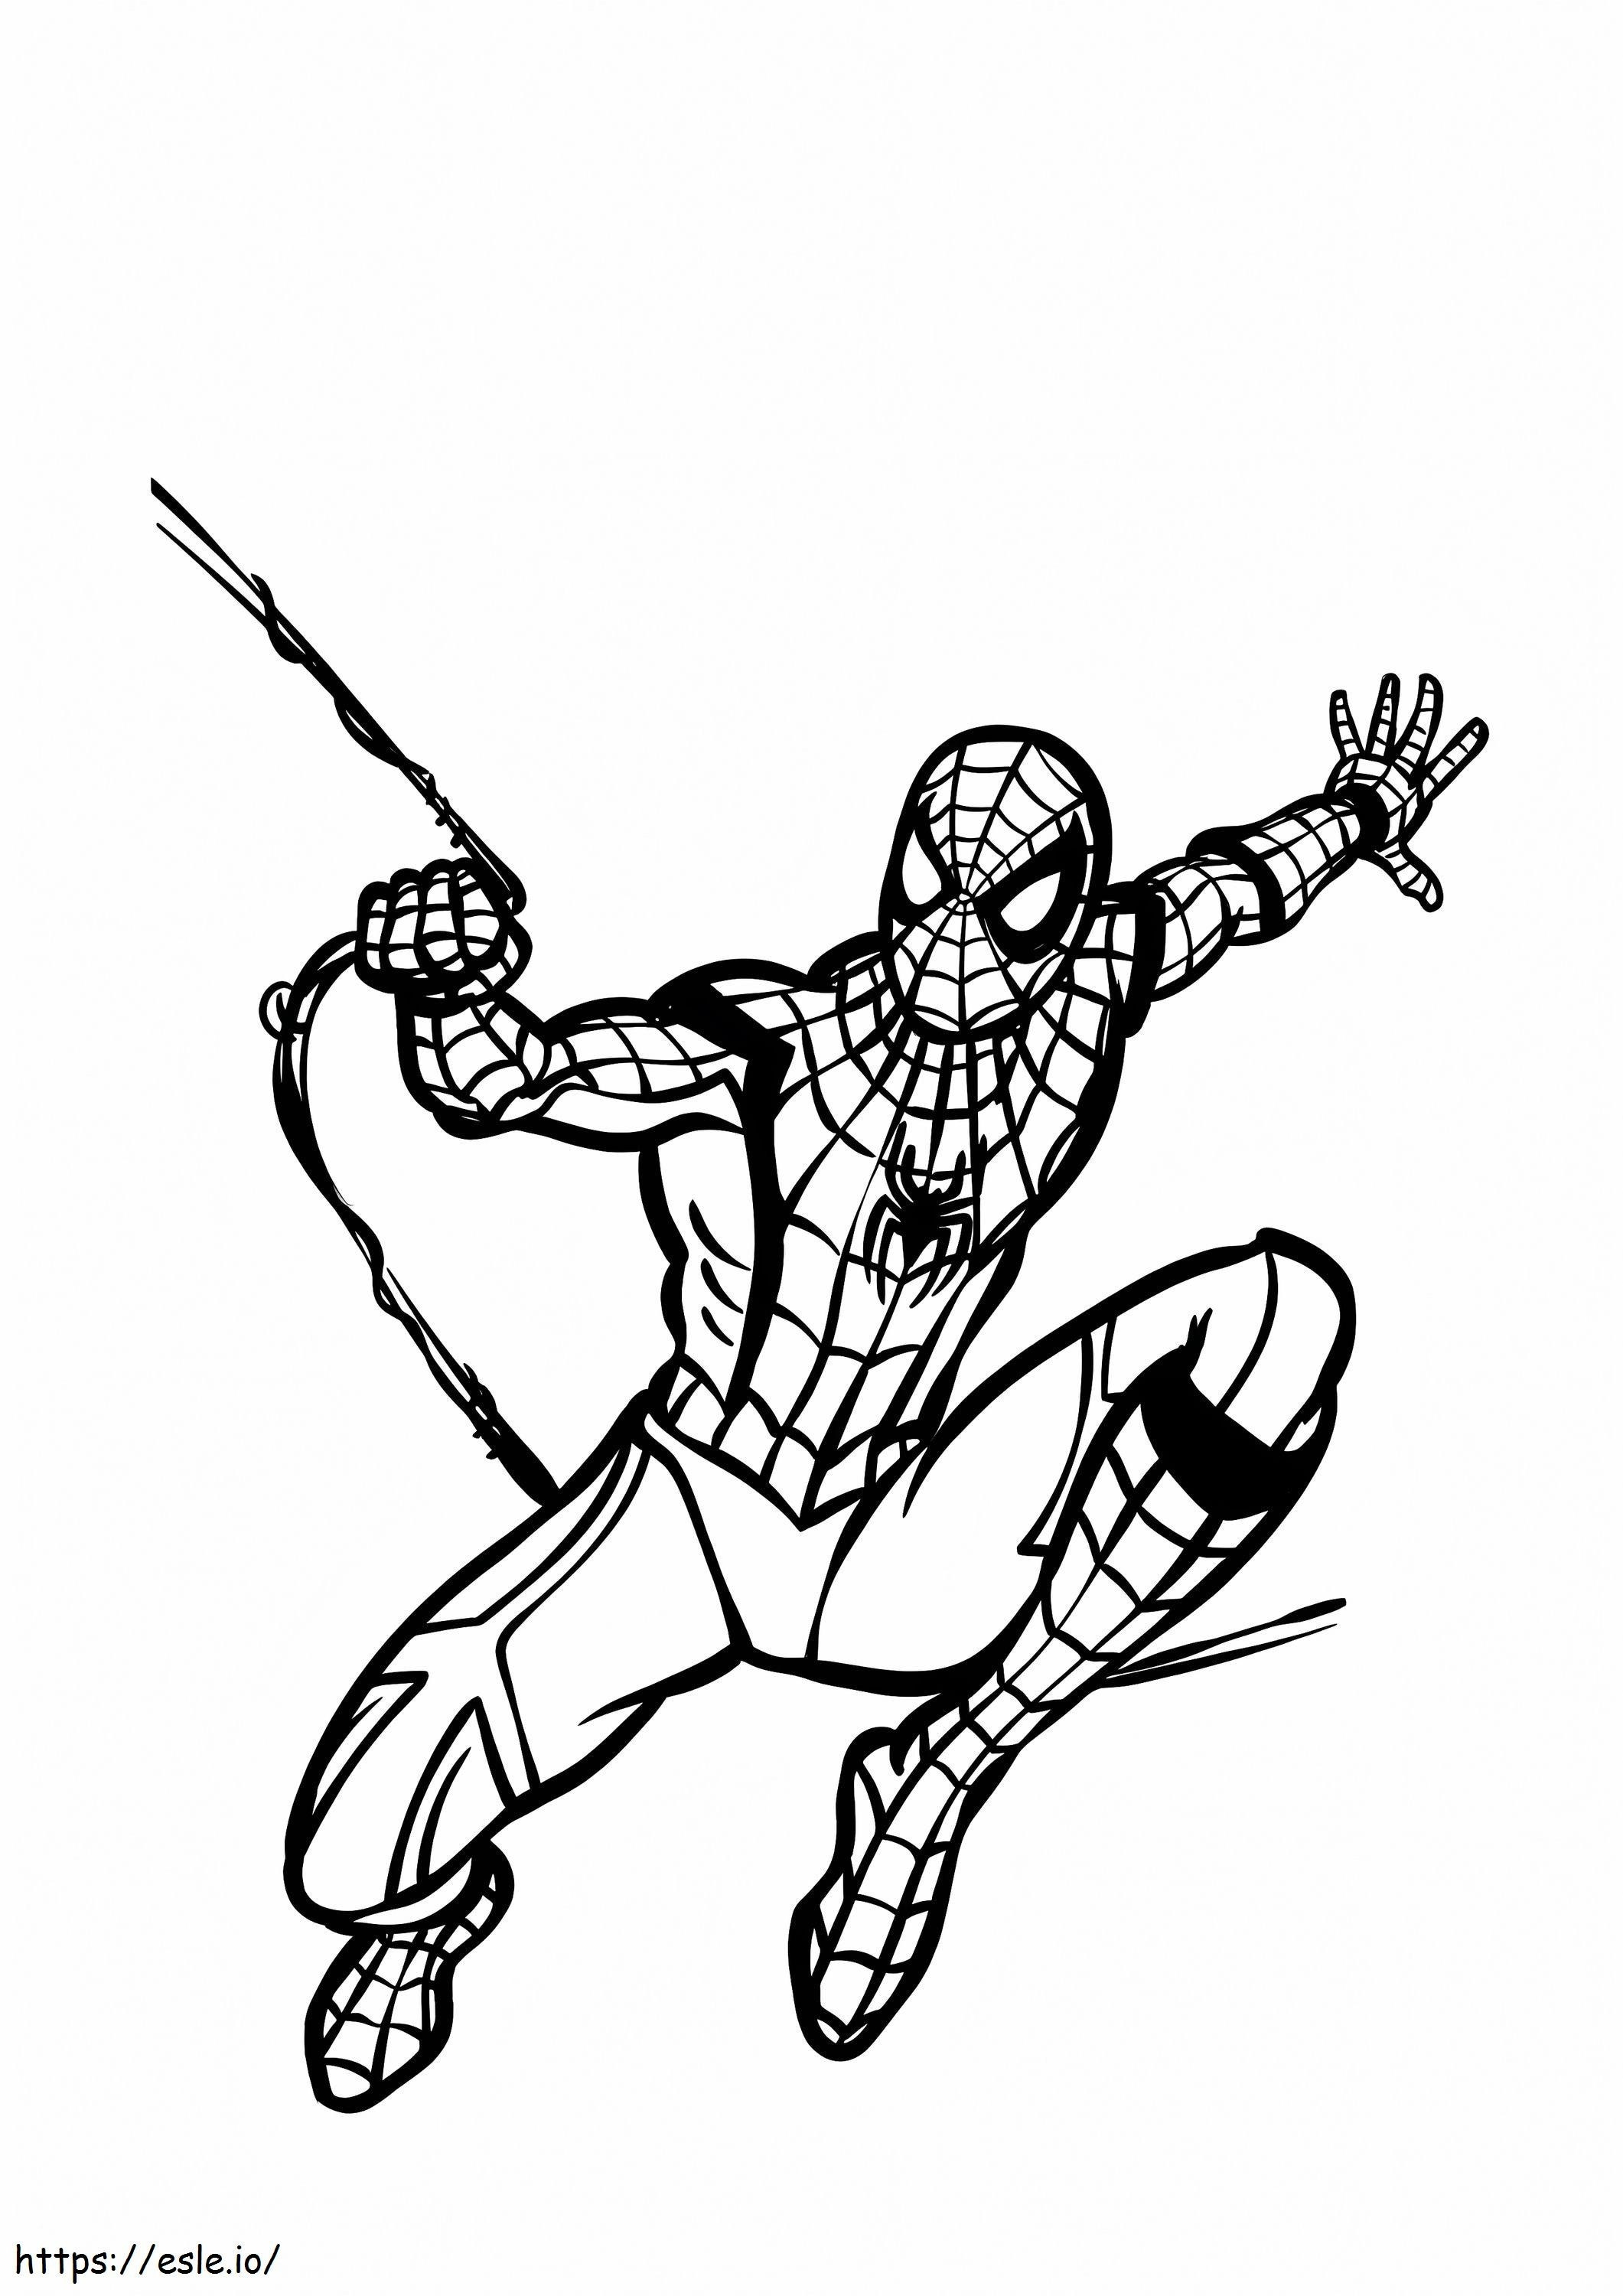 Podstawowy rysunek Spider Mana kolorowanka